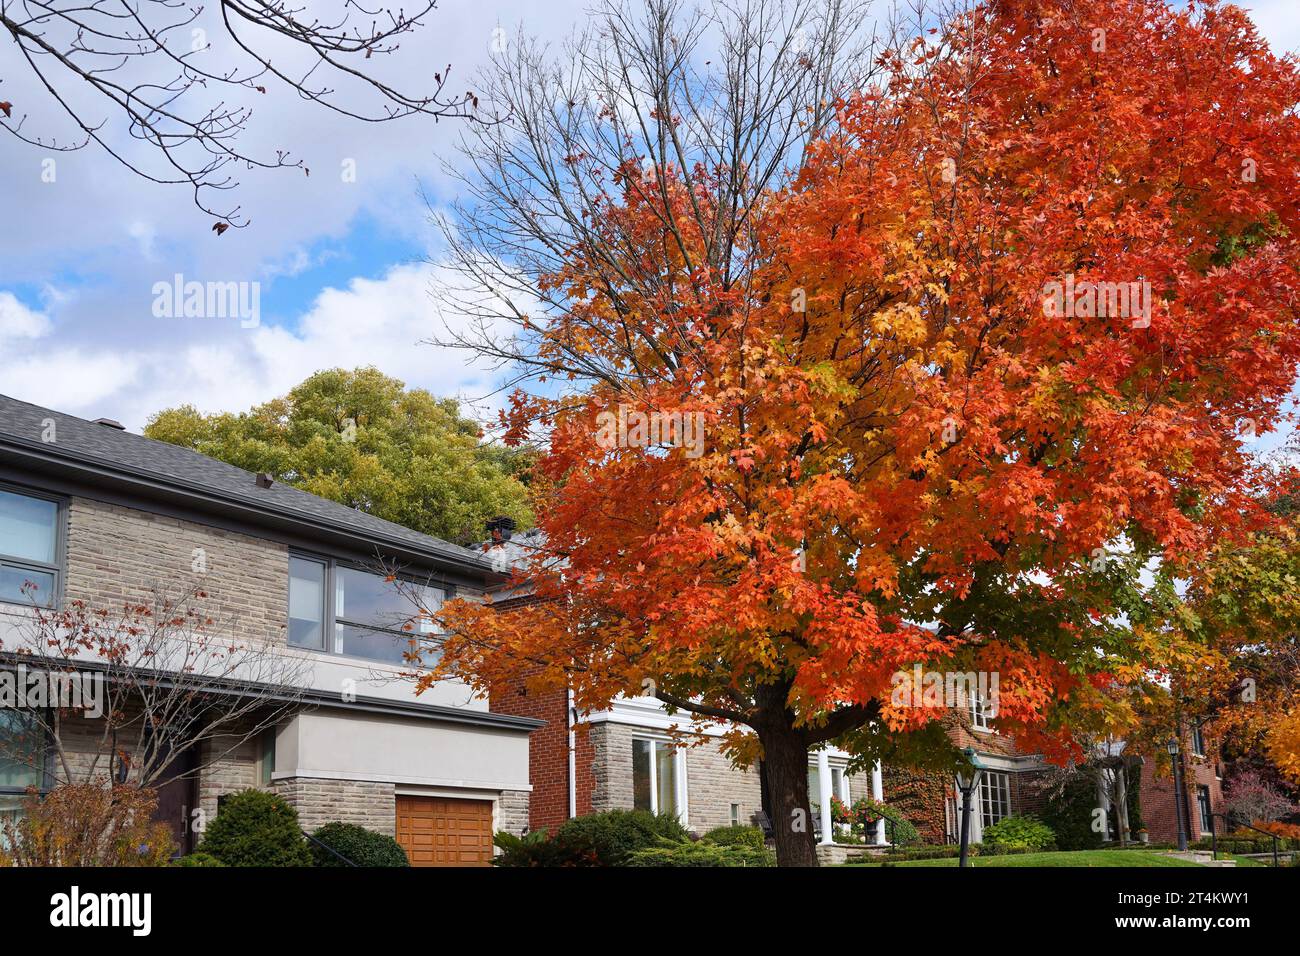 Rue résidentielle avec érable dans des couleurs vives d'automne Banque D'Images